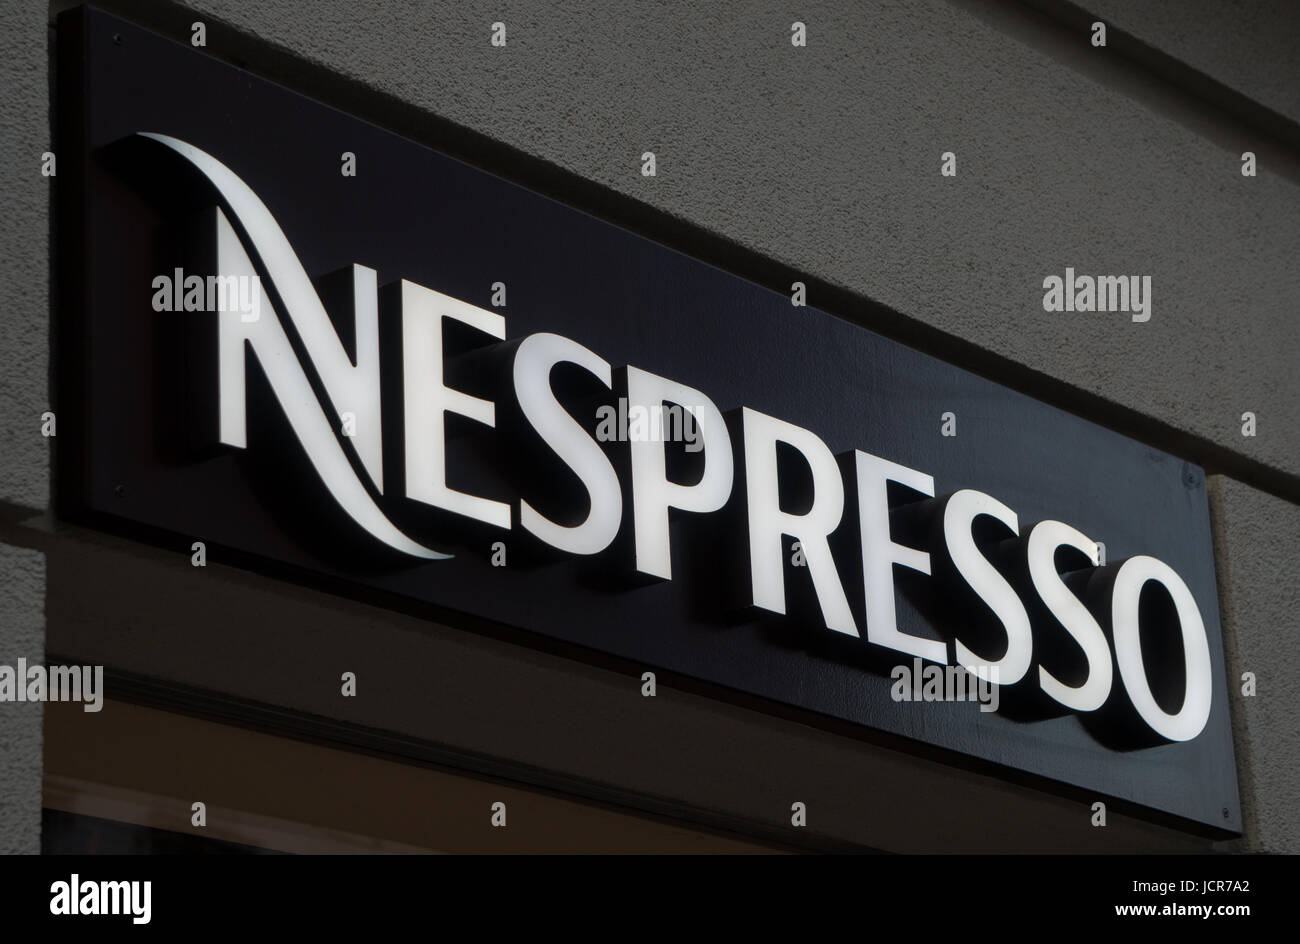 Graz, Austria - June 15th 2017: The Nespresso logo above the Graz store entrance Stock Photo